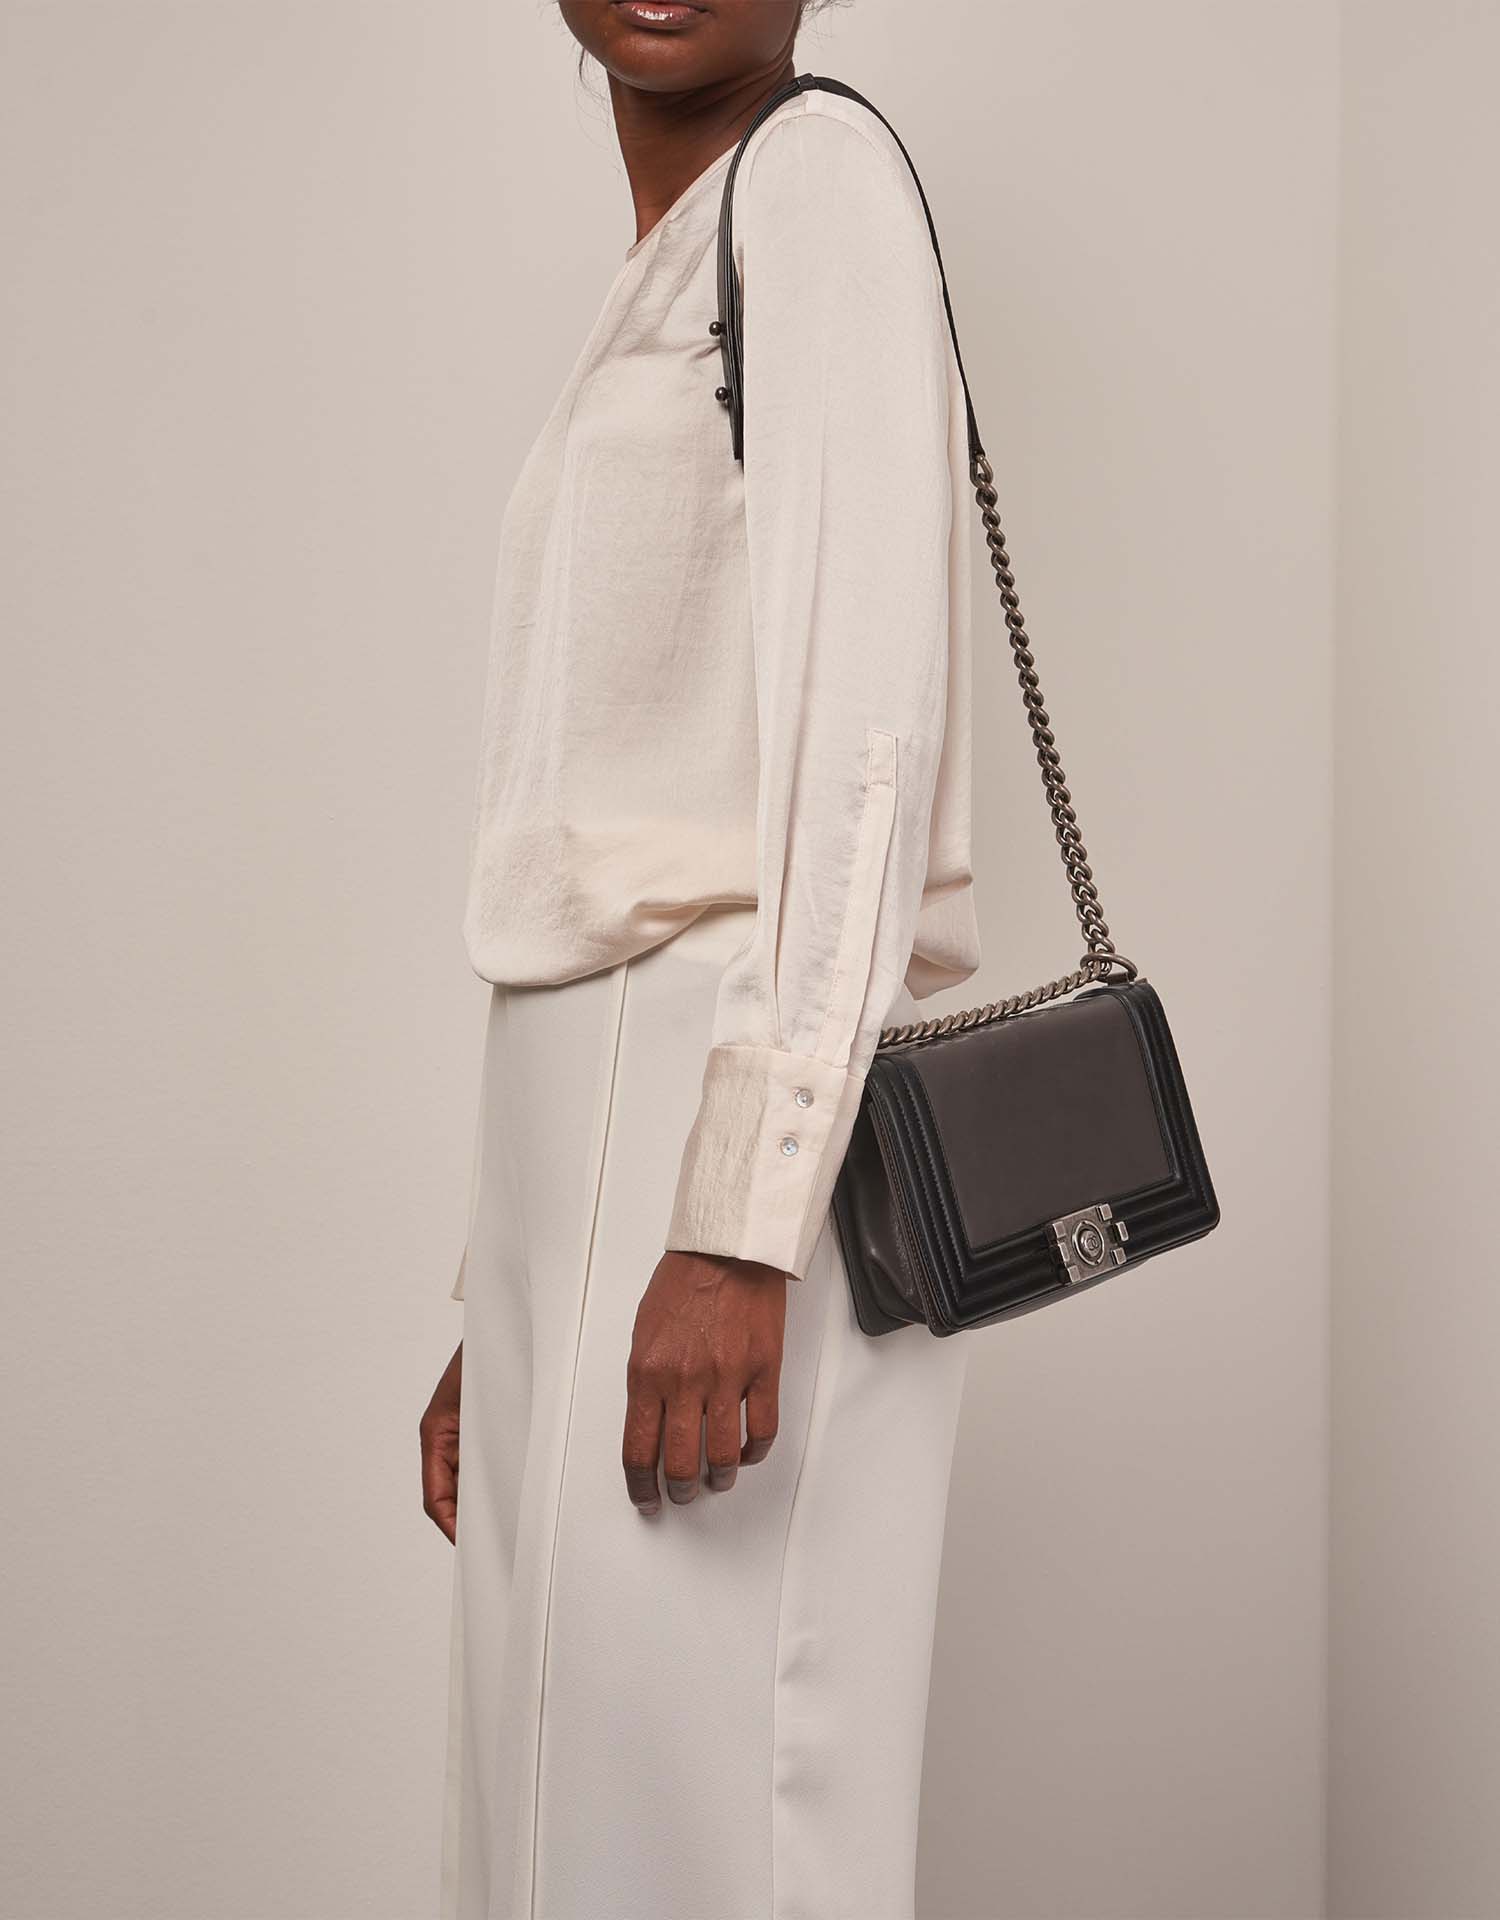 Chanel Boy OldMedium Schwarz-Grau auf Model | Verkaufen Sie Ihre Designer-Tasche auf Saclab.com